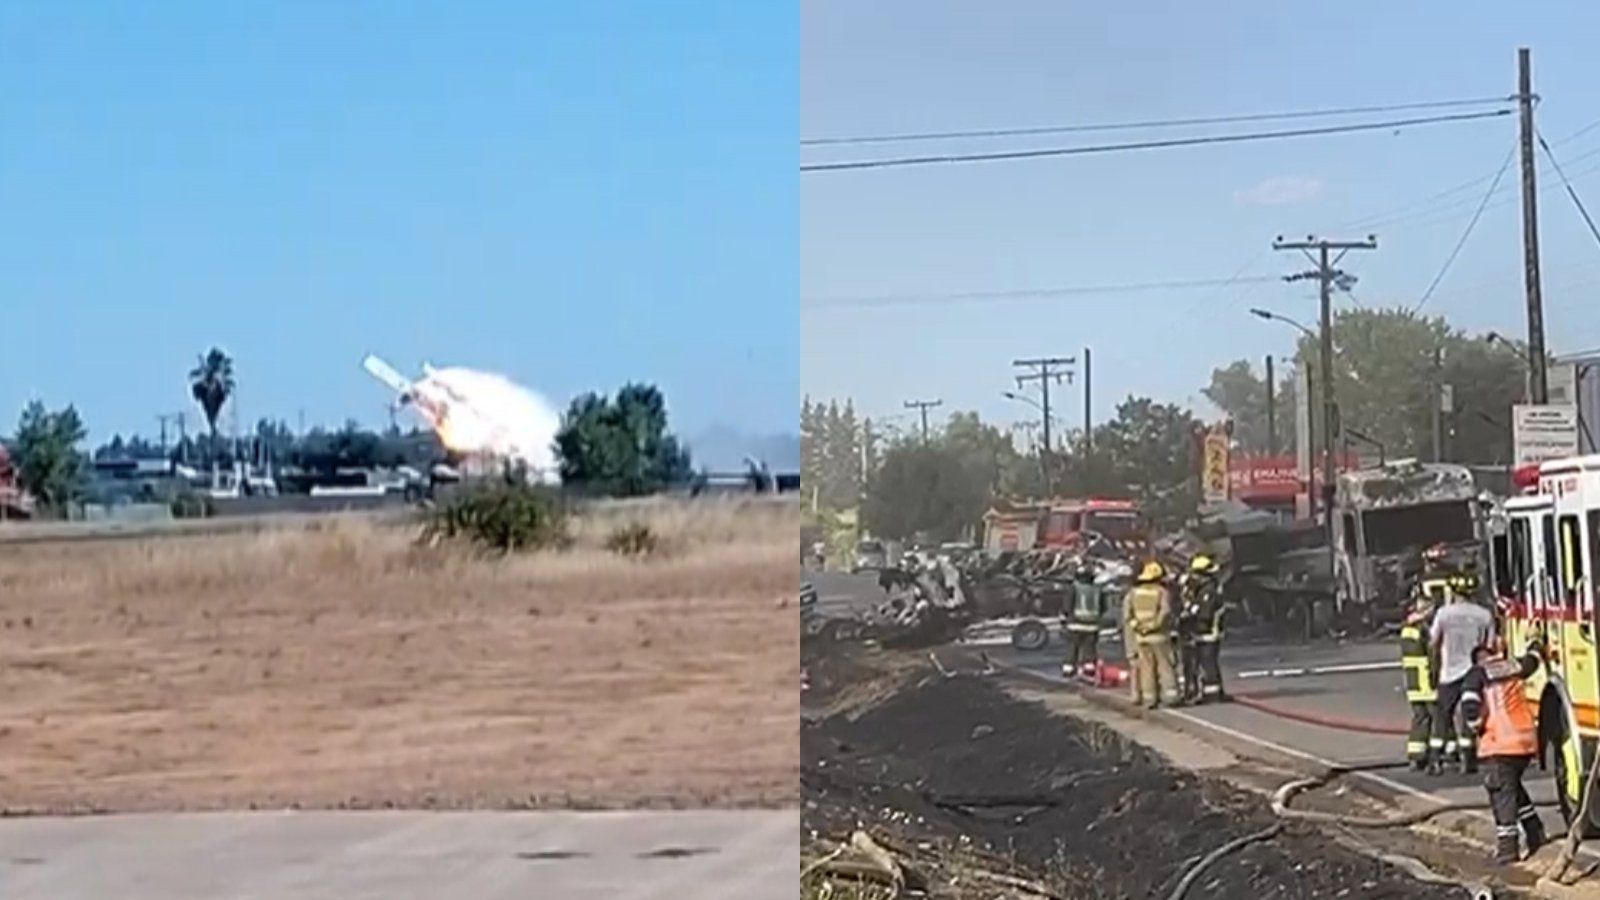 Confirman fallecimiento de piloto de avioneta estrellada en Ruta 5 Sur, Talca